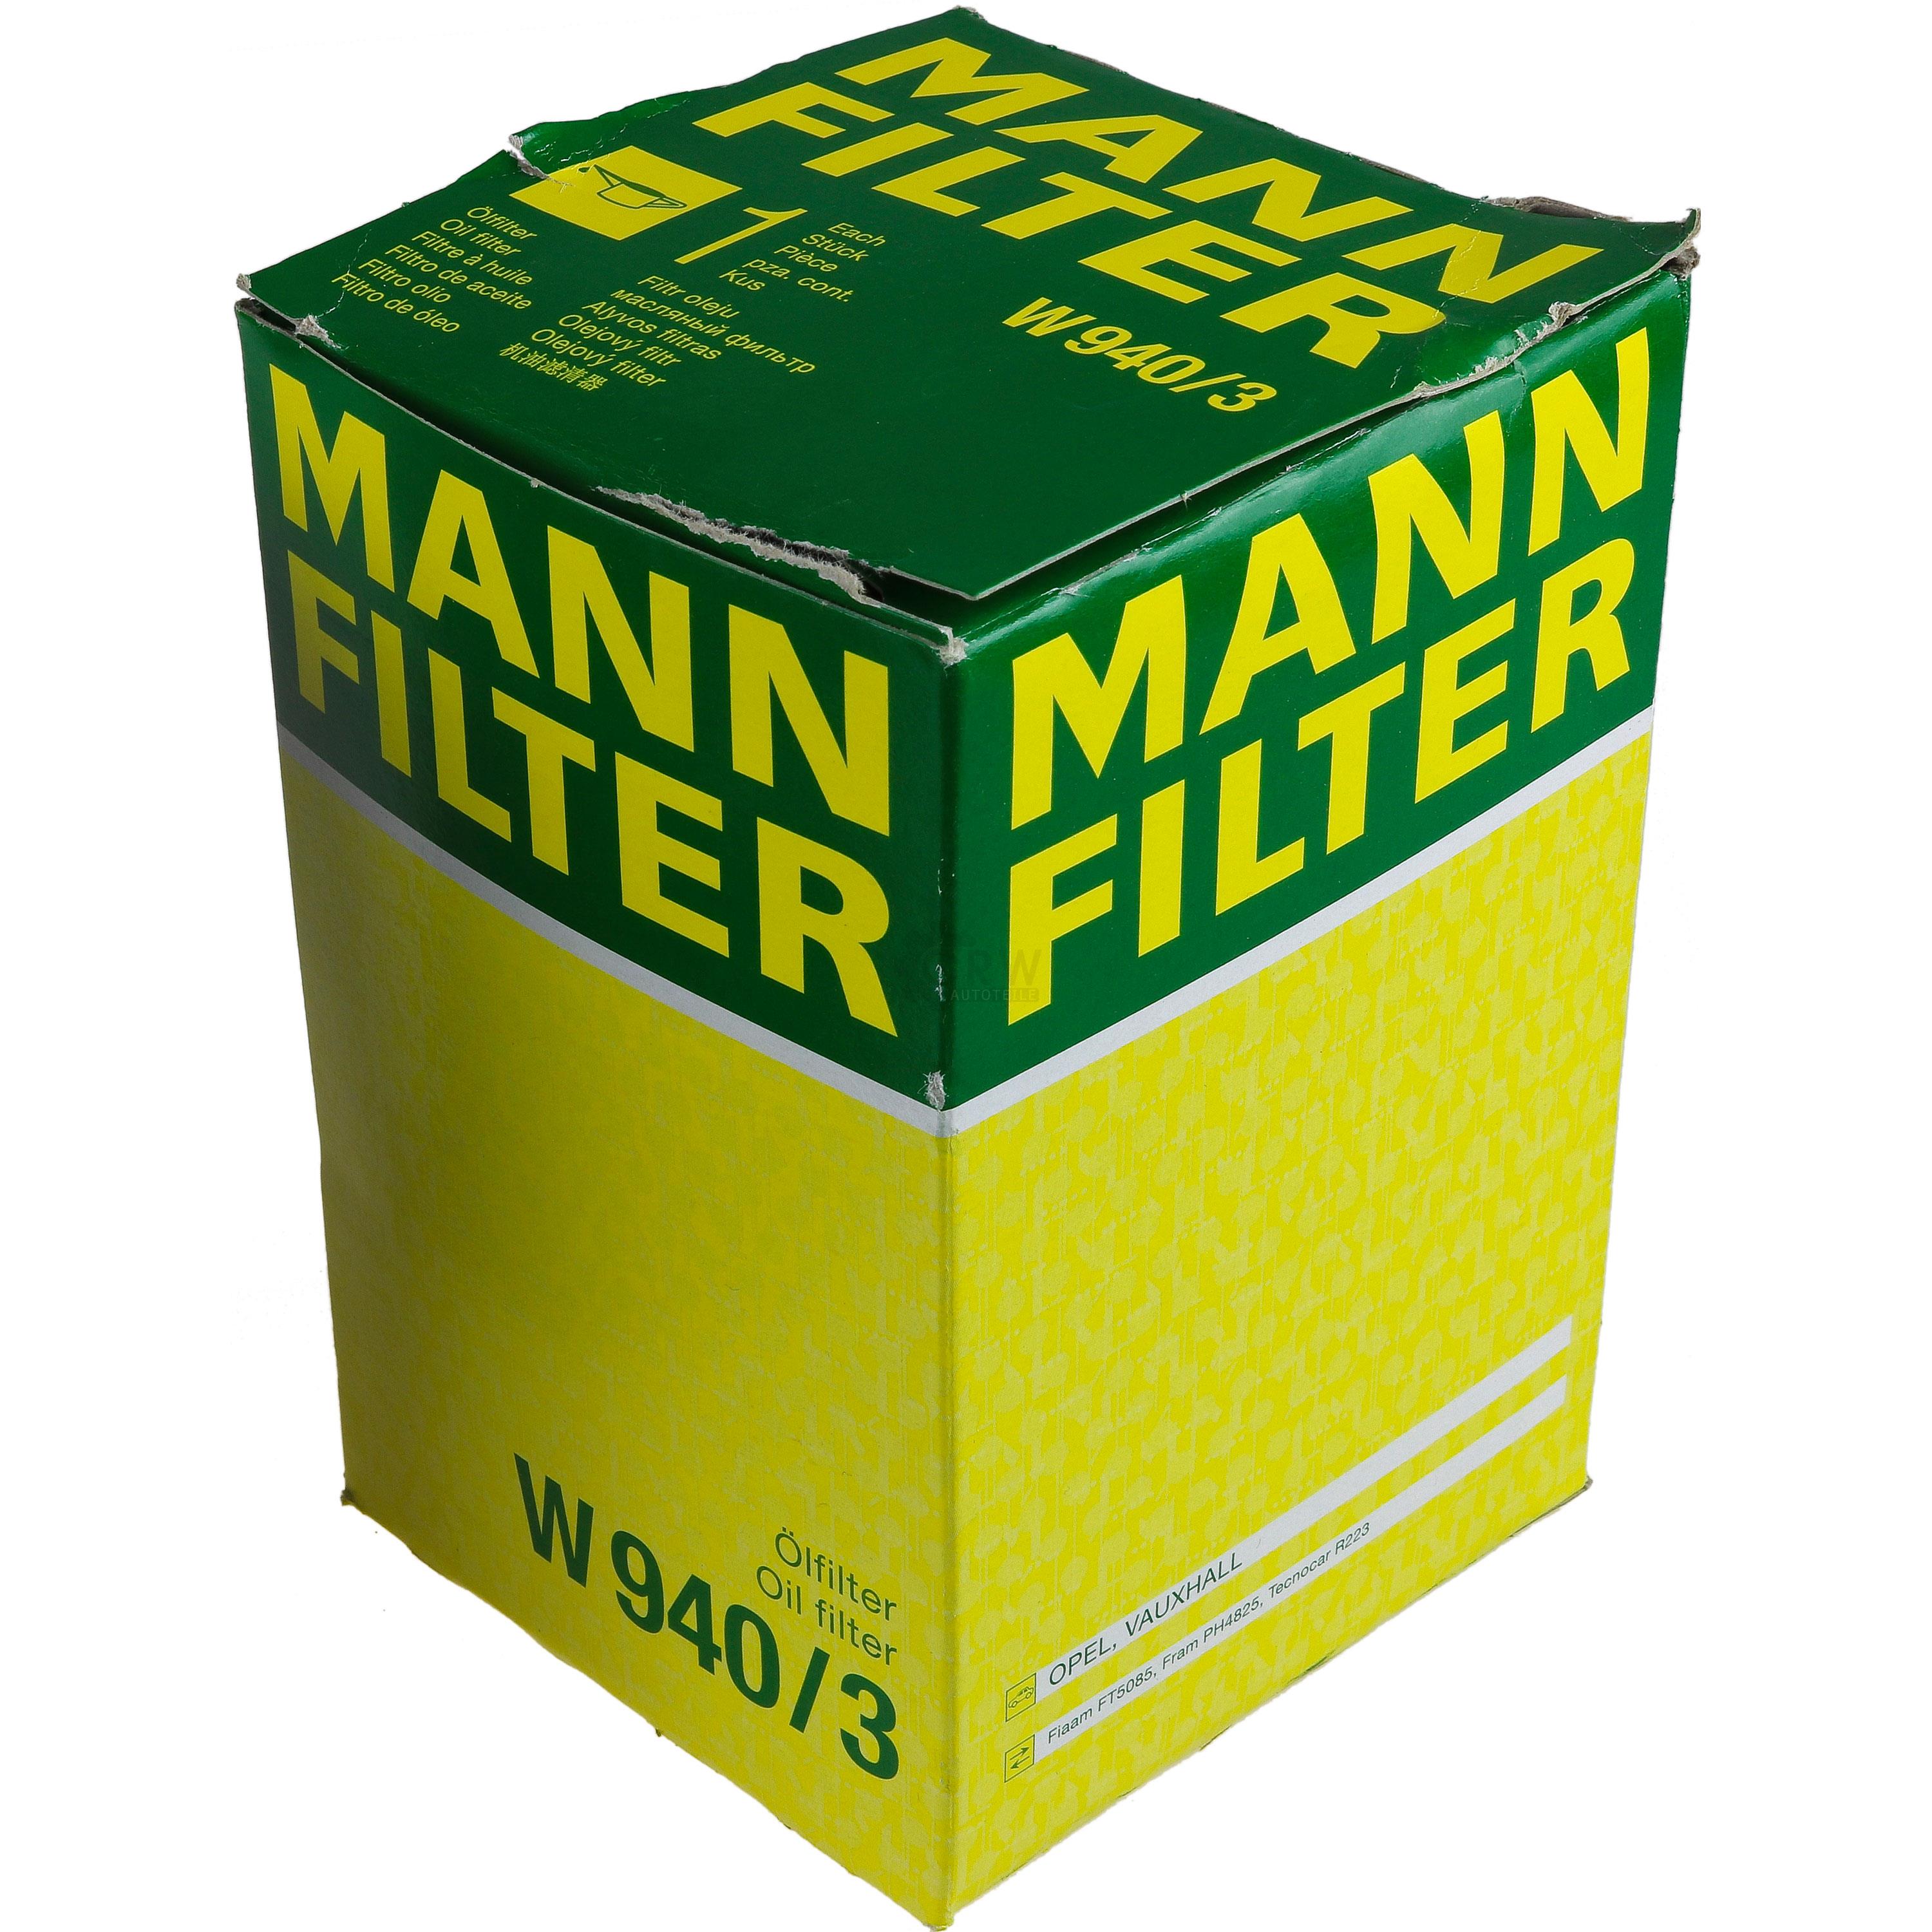 MANN-FILTER Ölfilter W 940/3 Oil Filter